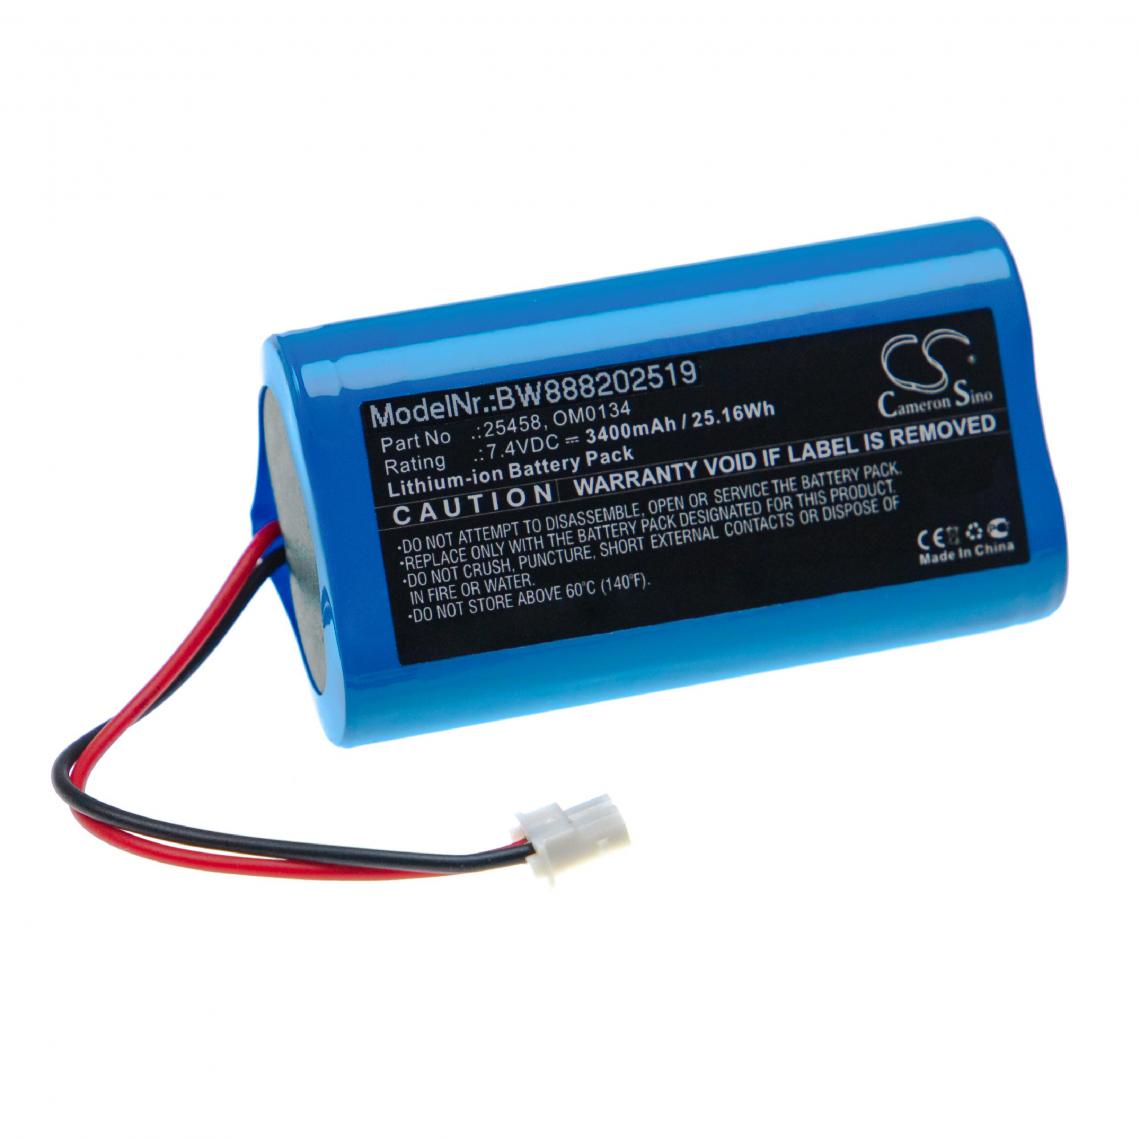 Vhbw - vhbw Batterie remplacement pour SurgiTel 25458, OM0134 pour appareil médical (3400mAh, 7,4V, Li-ion) - Piles spécifiques